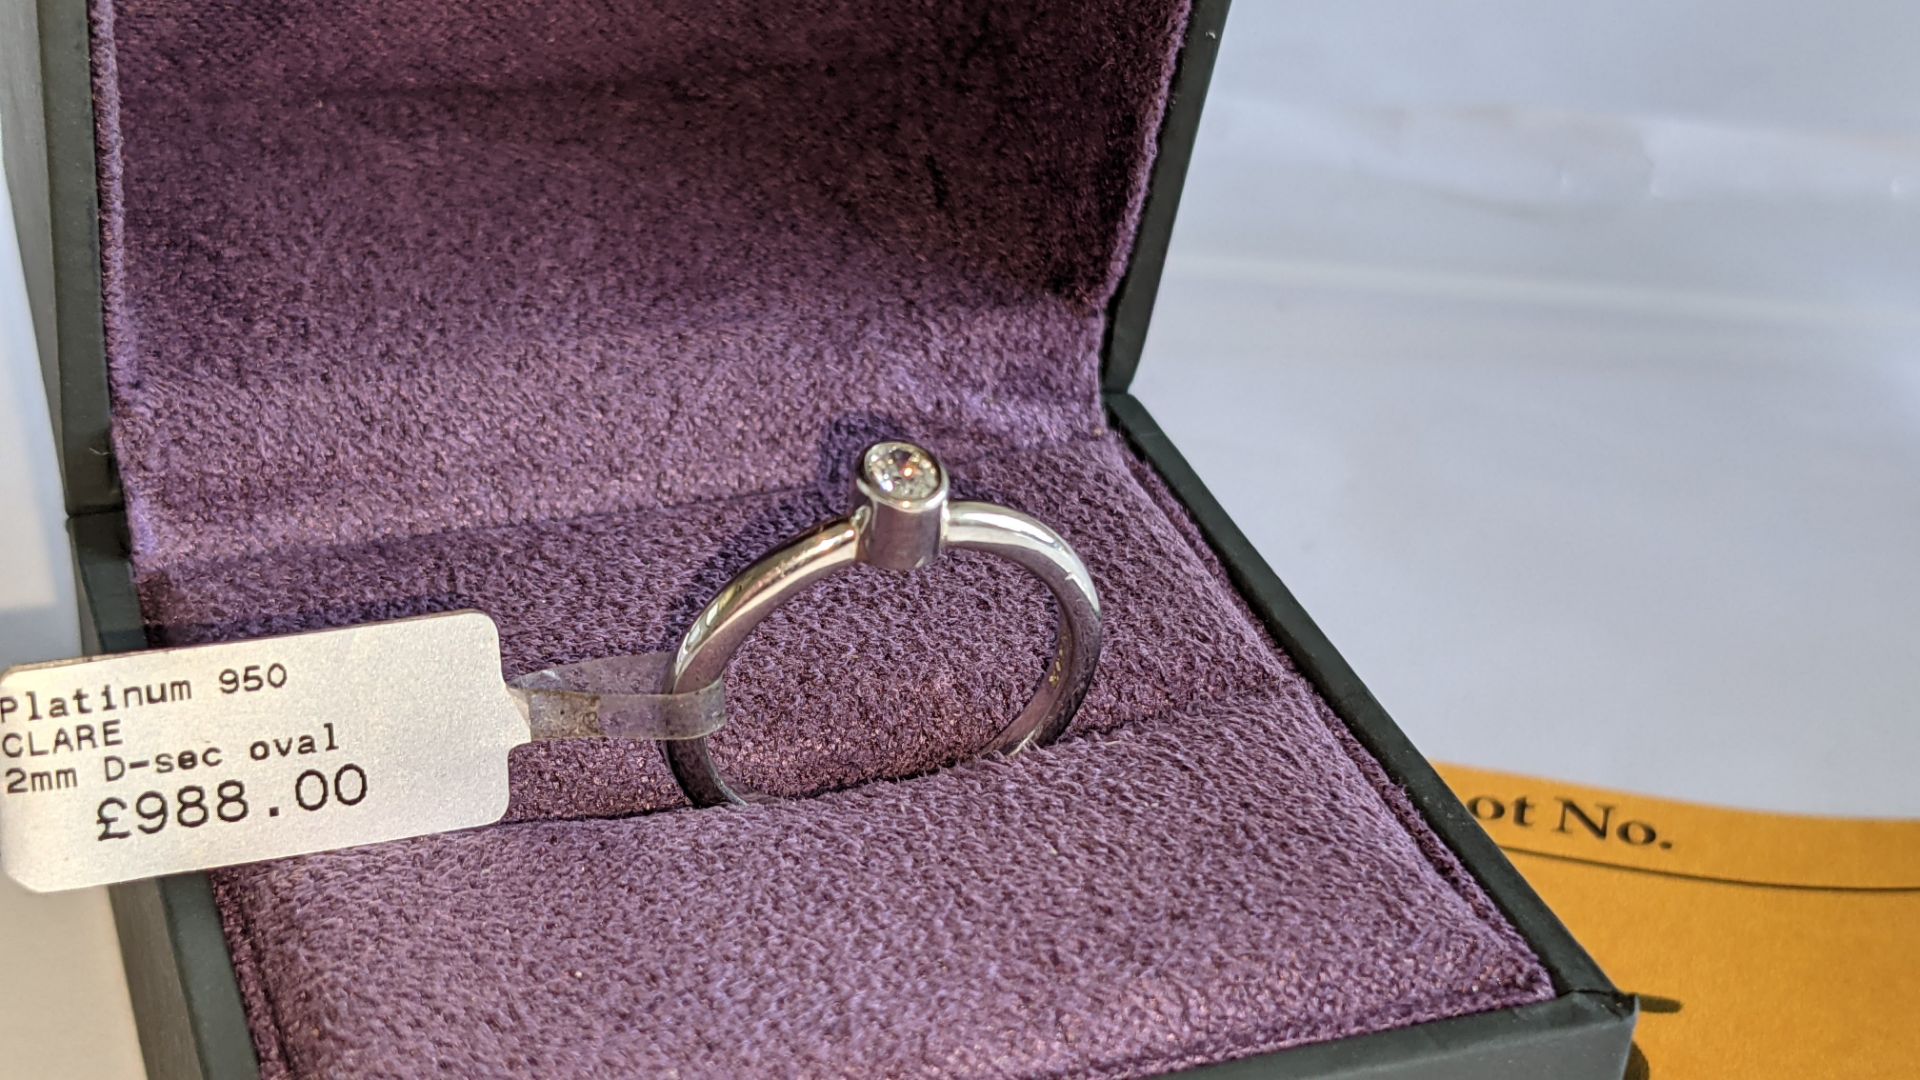 Platinum 950 & diamond ring with 0.15ct oval diamond RRP £988 - Image 5 of 14